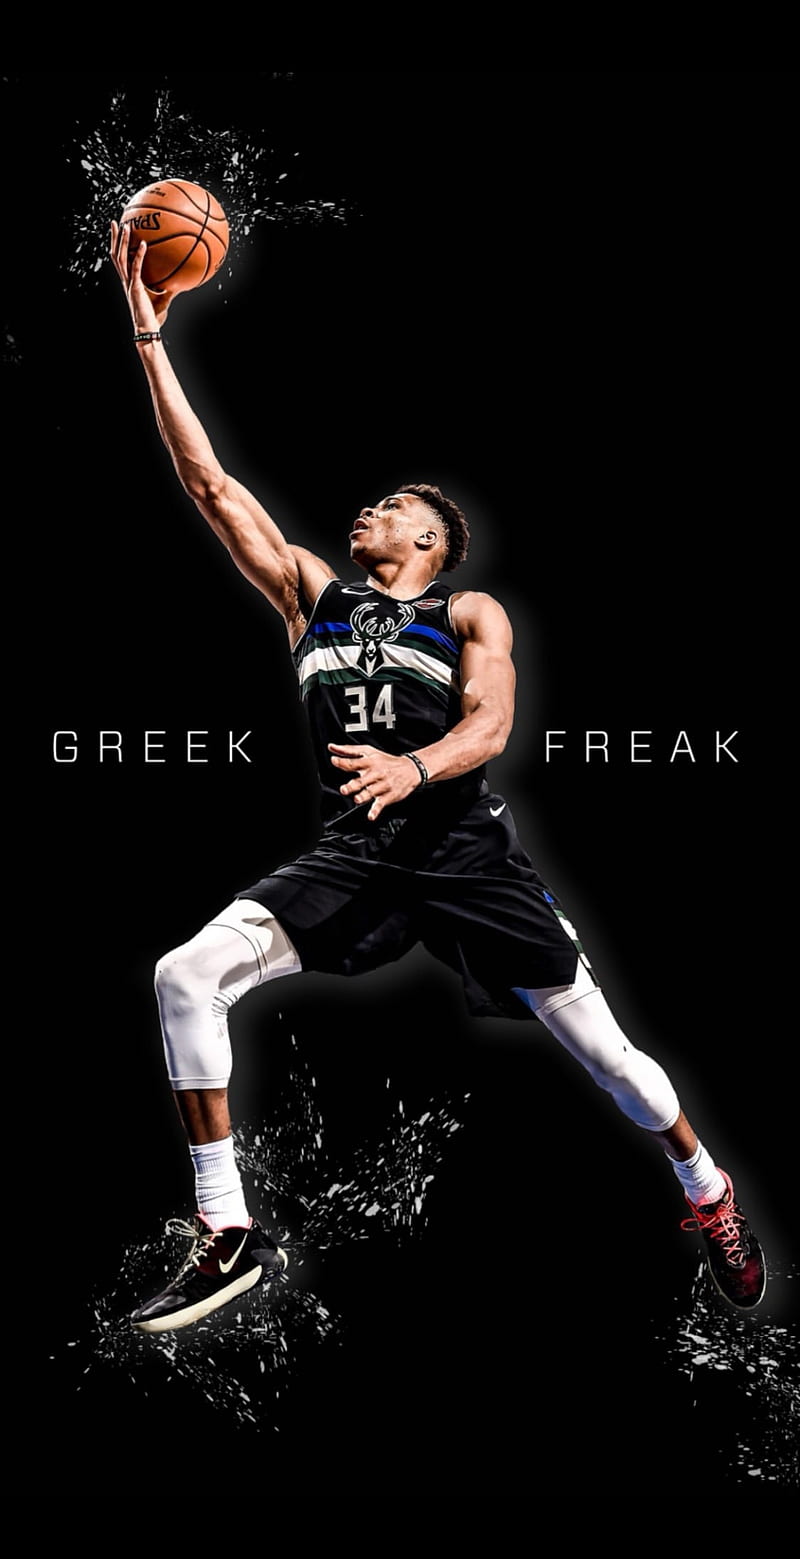 The Greek Freak - Giannis Antetokounmpo wallpaper (40282518) - fanpop